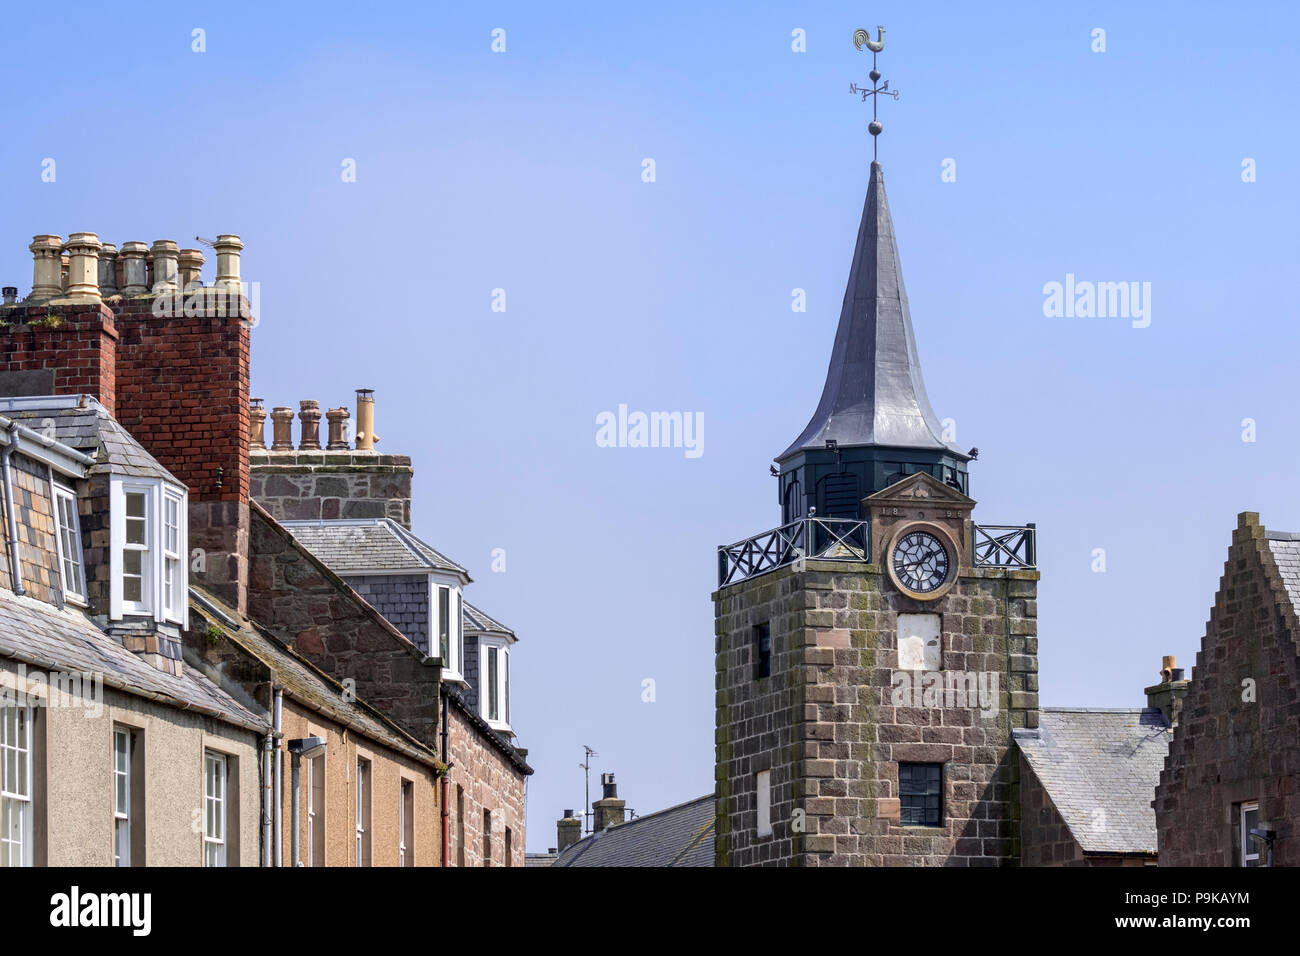 Uhr aus dem 18. Jahrhundert Tower/Stadthaus in der Altstadt von Stonehaven, Aberdeenshire, Schottland, Großbritannien Stockfoto